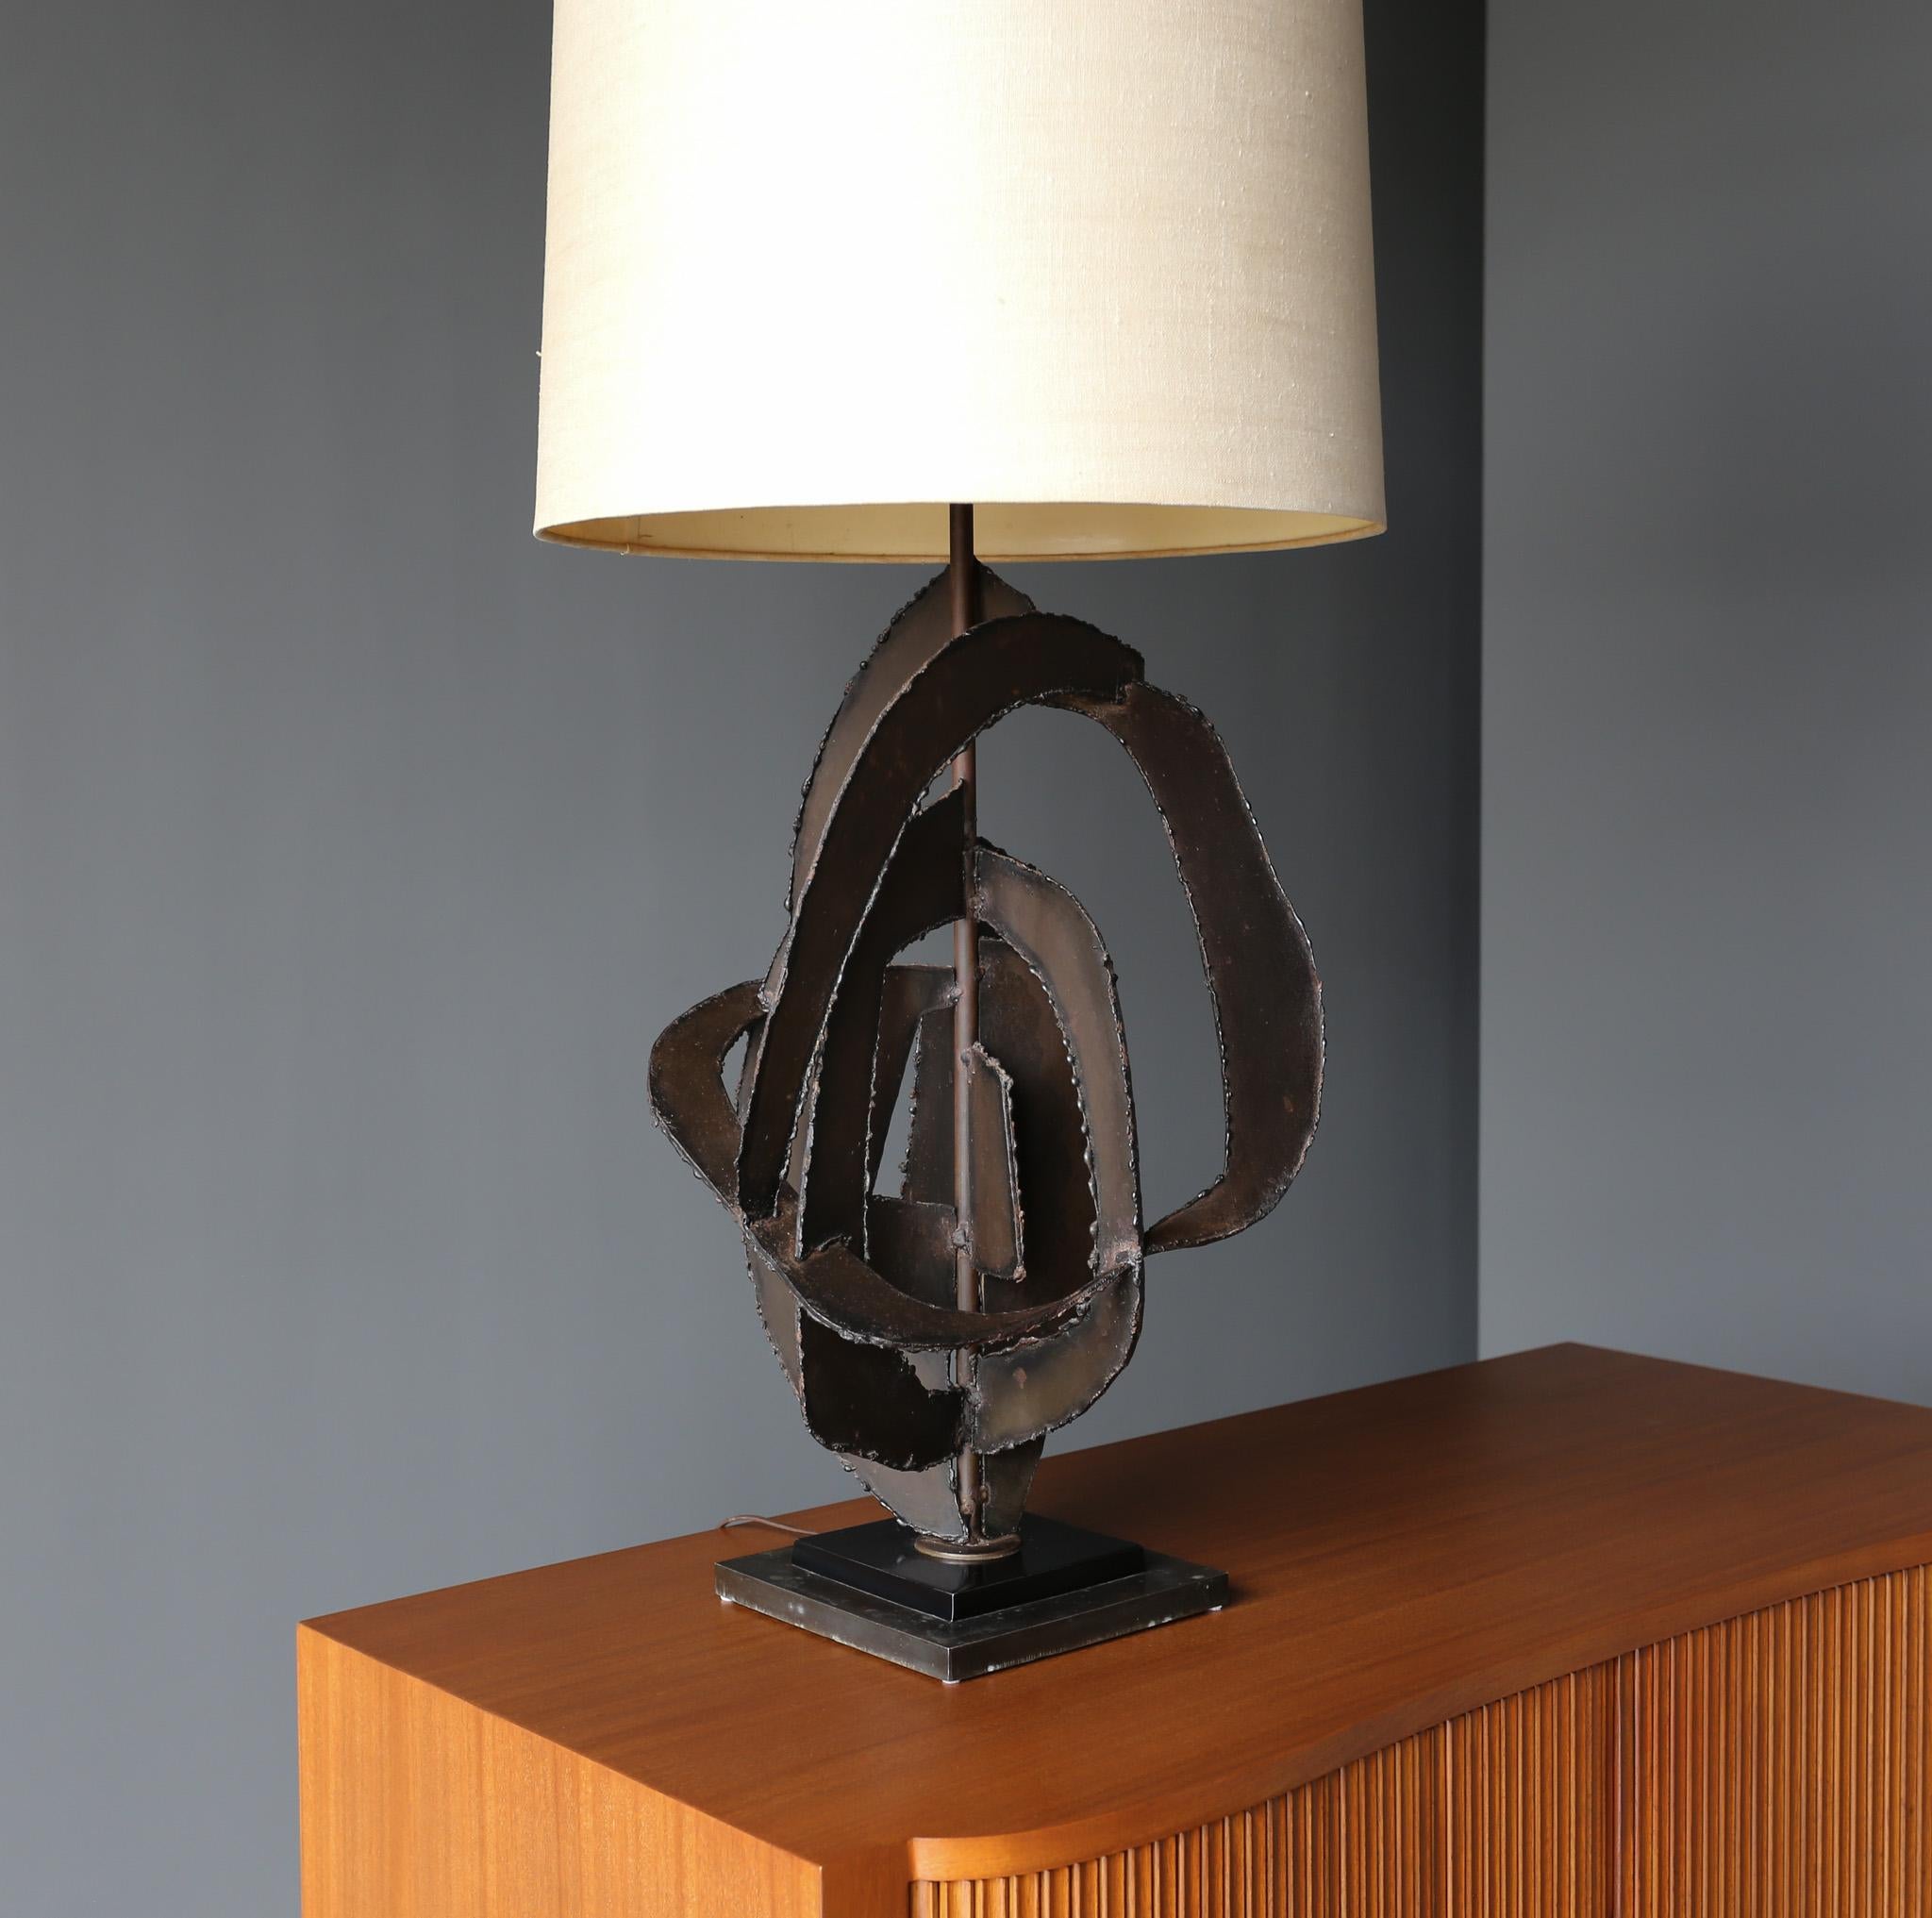 Skulpturale Tischlampe von Richard Barr für die STUDIO-Kollektion von Laurel, um 1965 (amerikanisch)